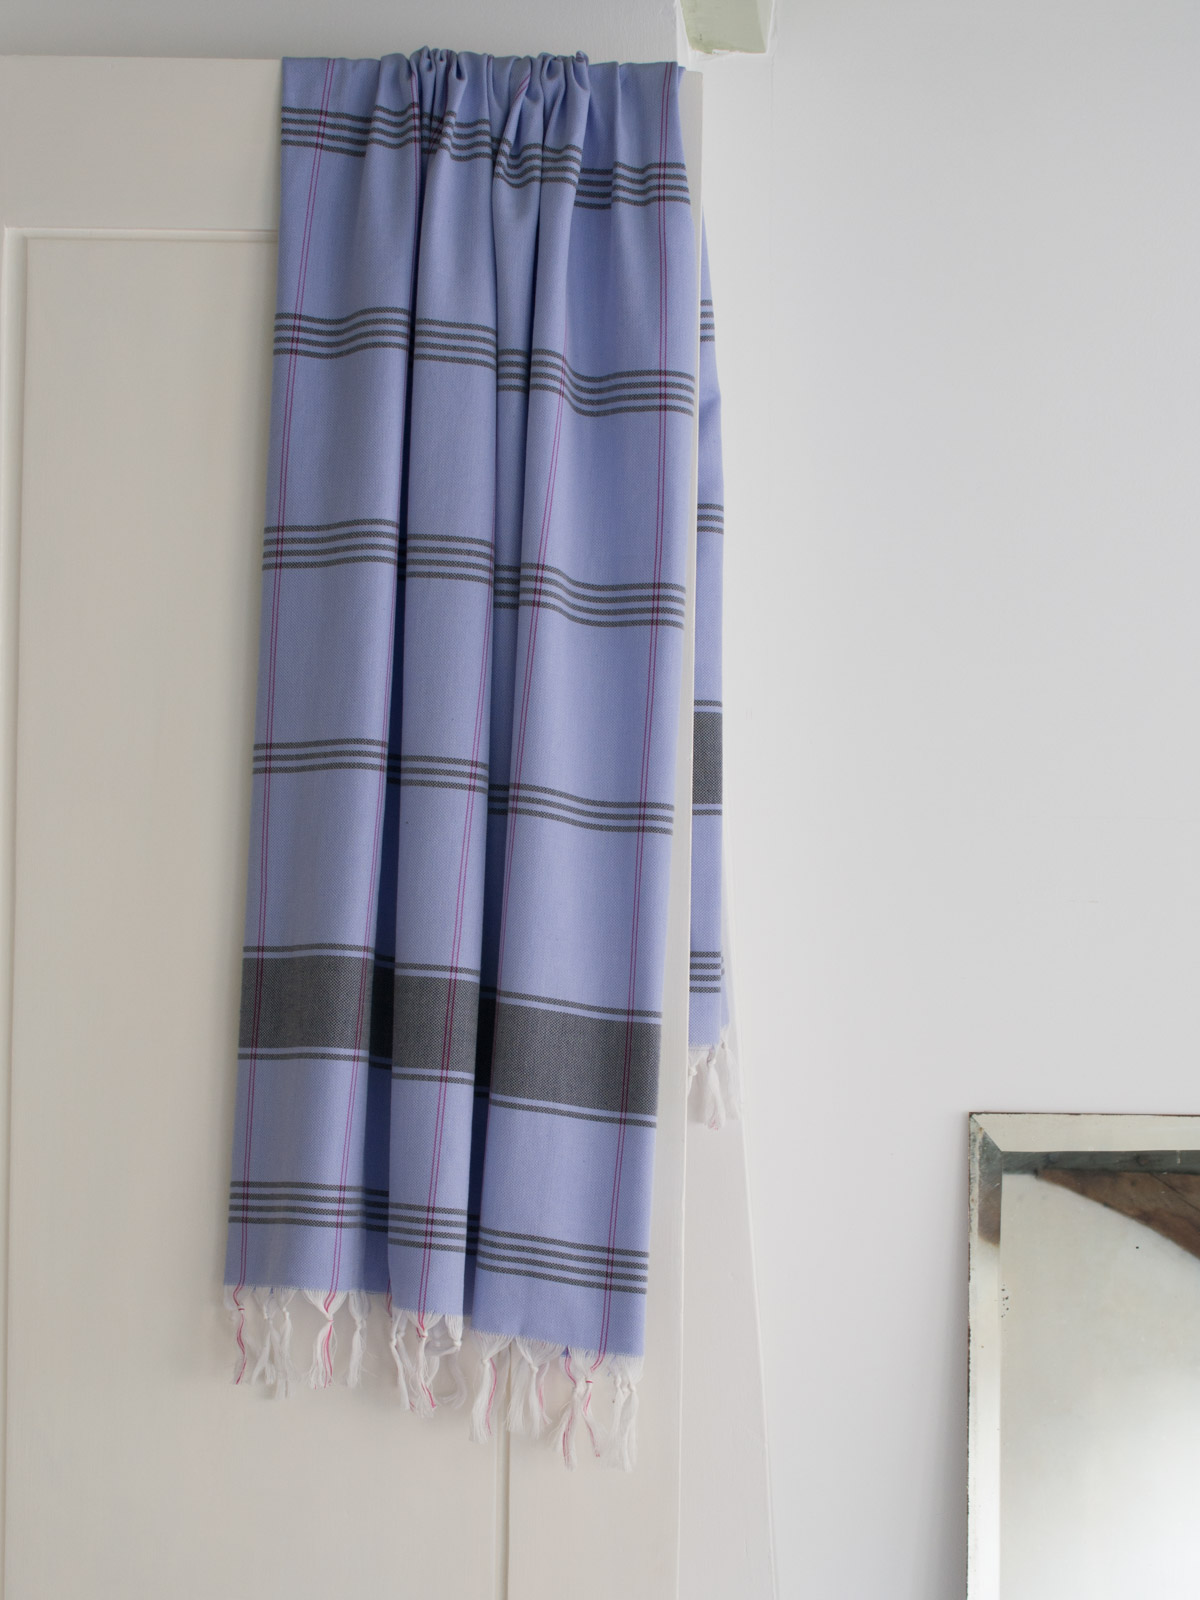 hammam towel checkered lavender blue/dark blue